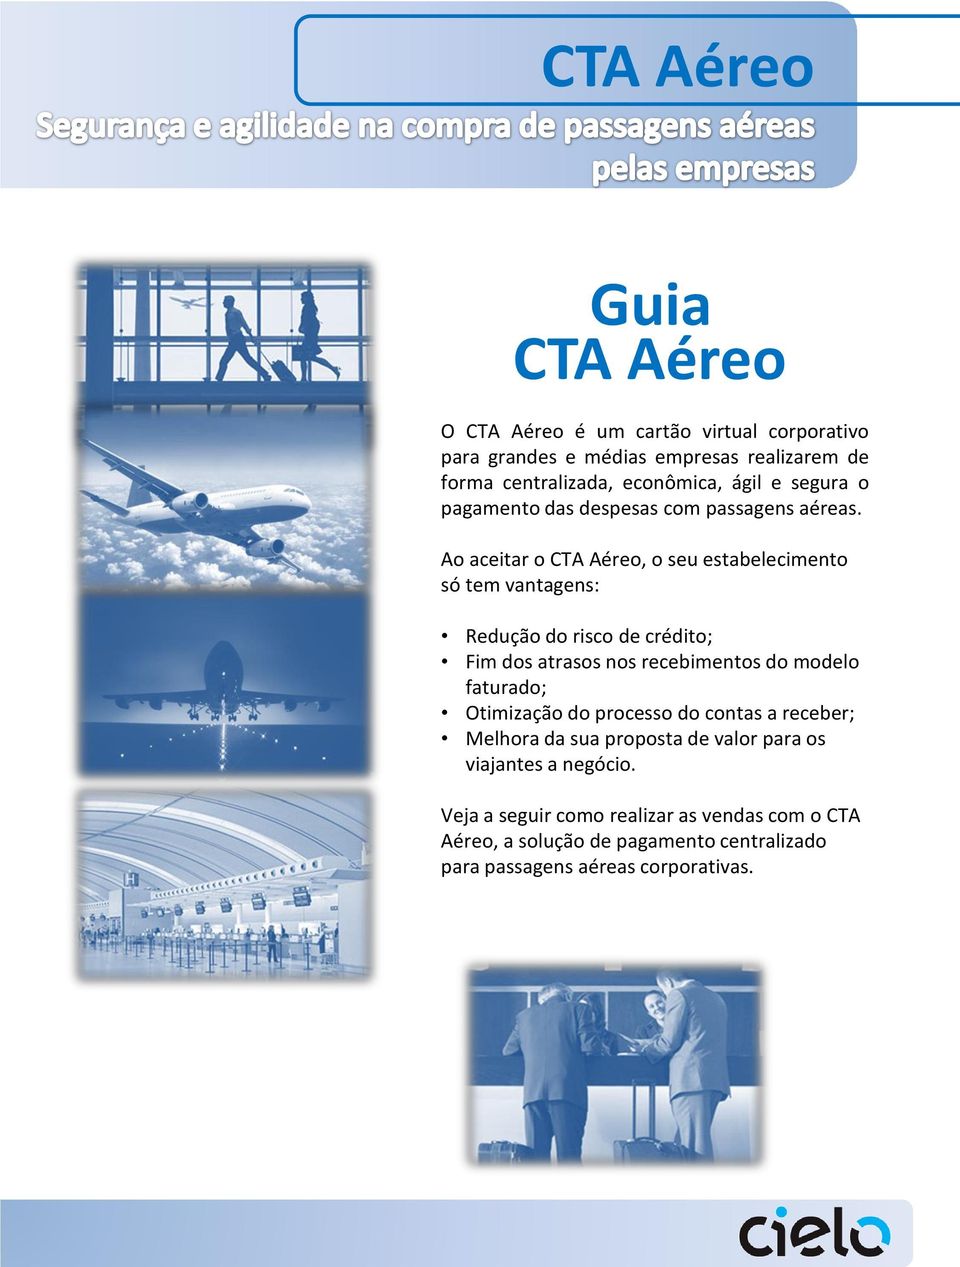 Ao aceitar o CTA Aéreo, o seu estabelecimento só tem vantagens: Redução do risco de crédito; Fim dos atrasos nos recebimentos do modelo